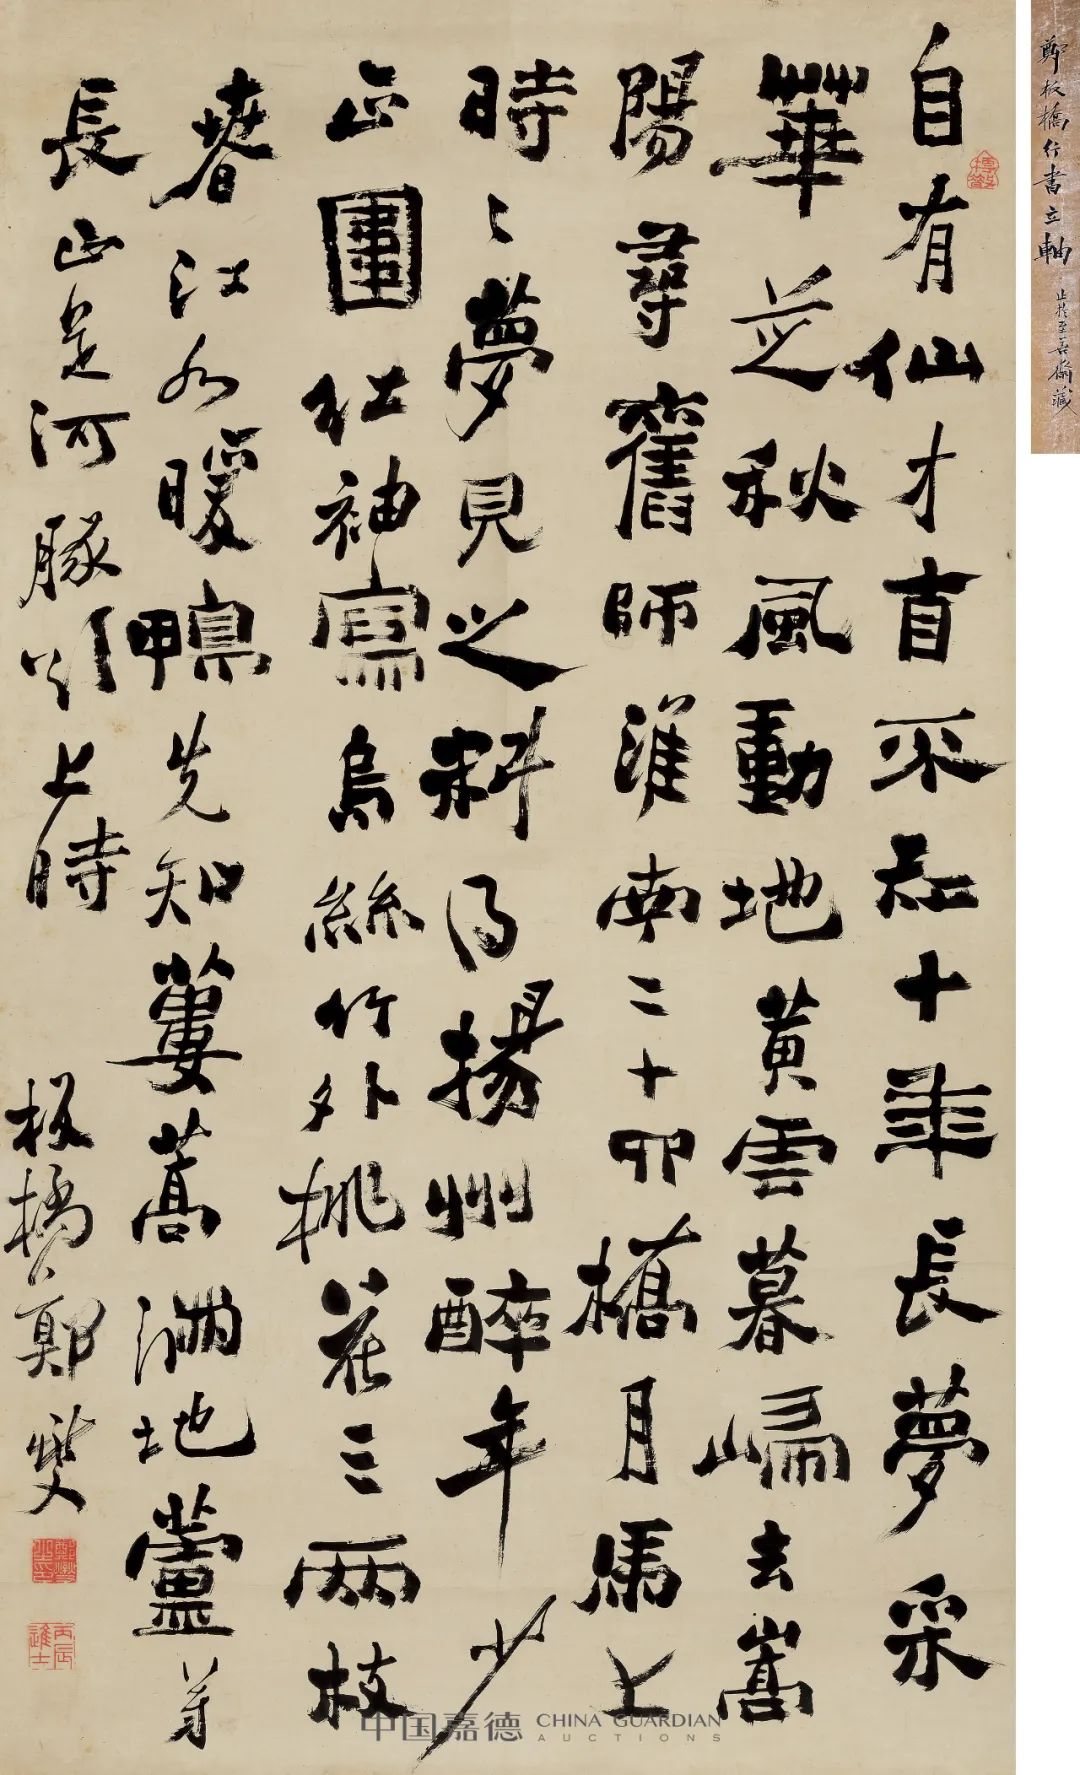 中国嘉德2021春拍| 《中国古代书画》日场书法精品抢先看- 久藏艺术网